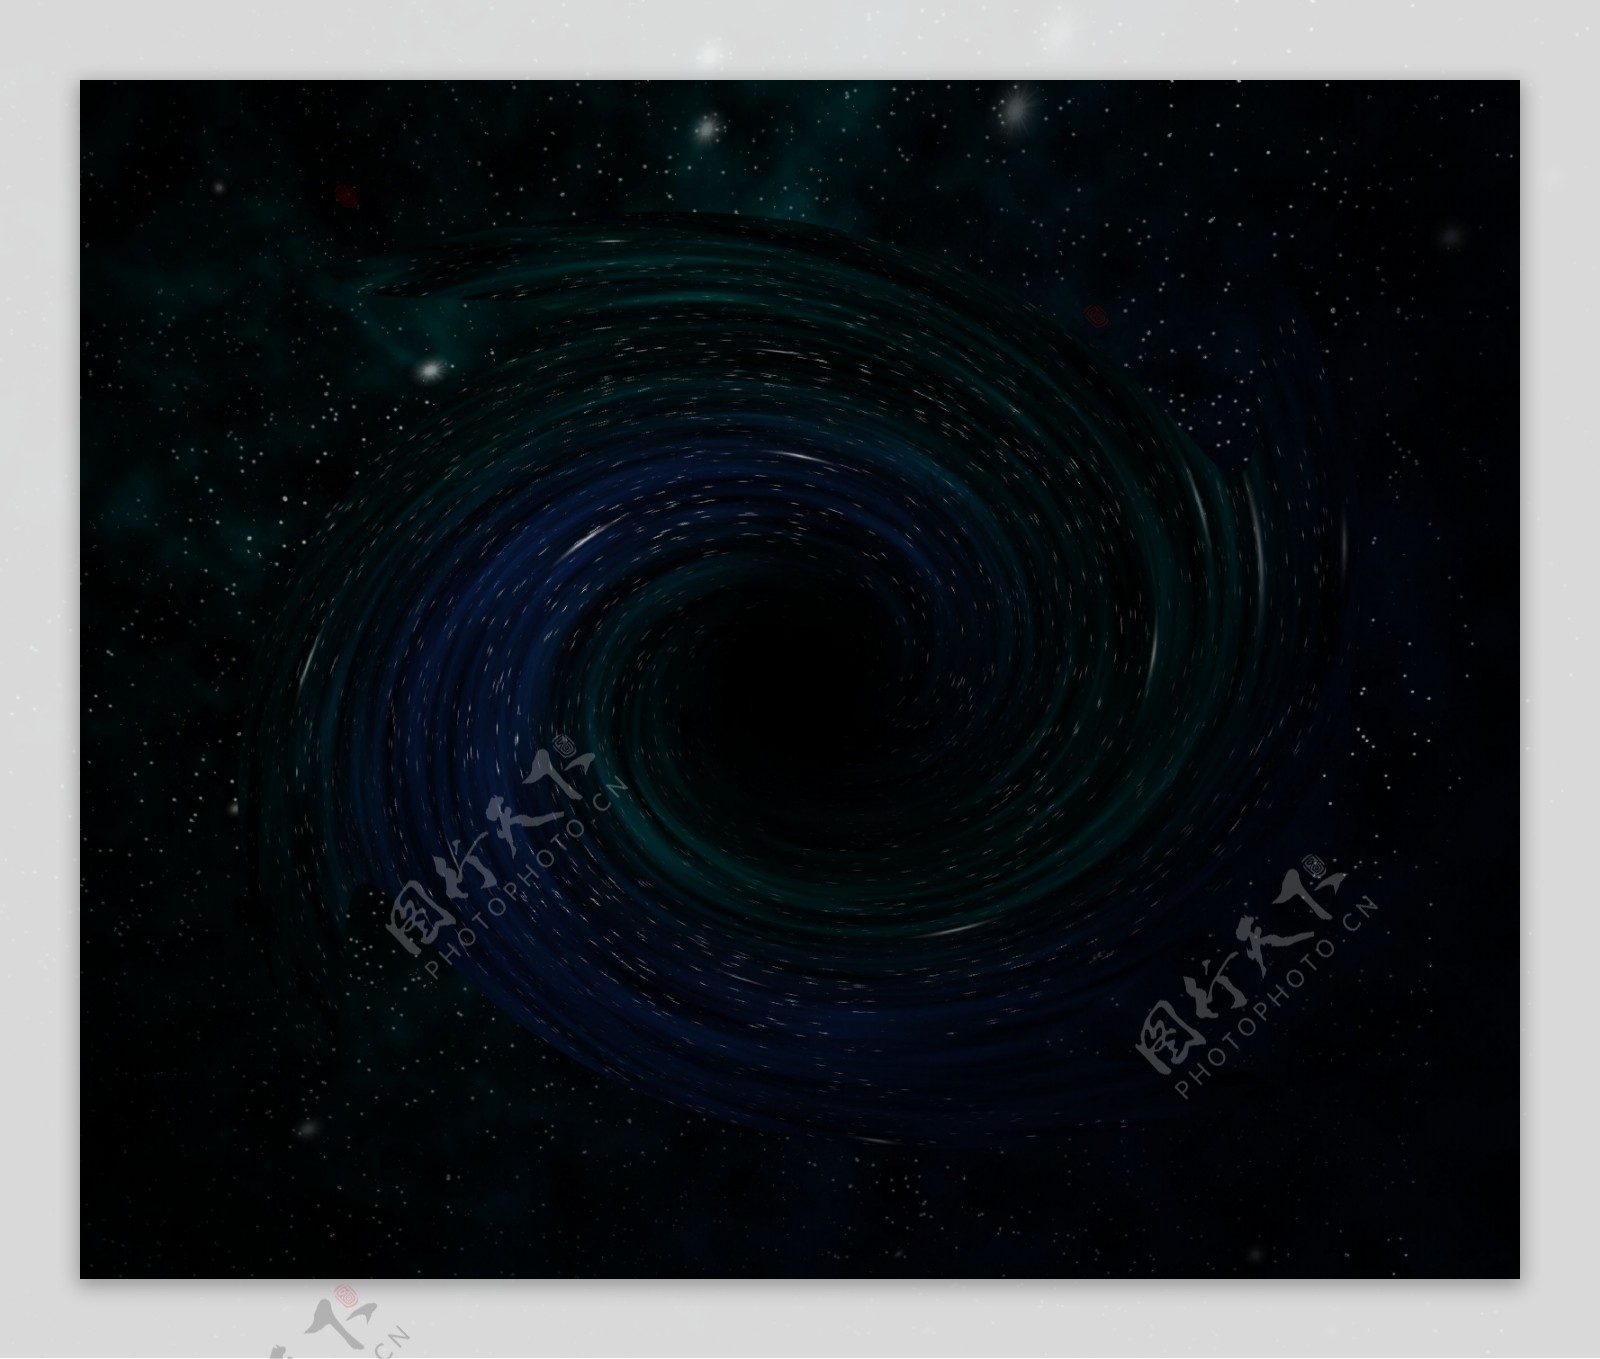 黑洞星云空间背景